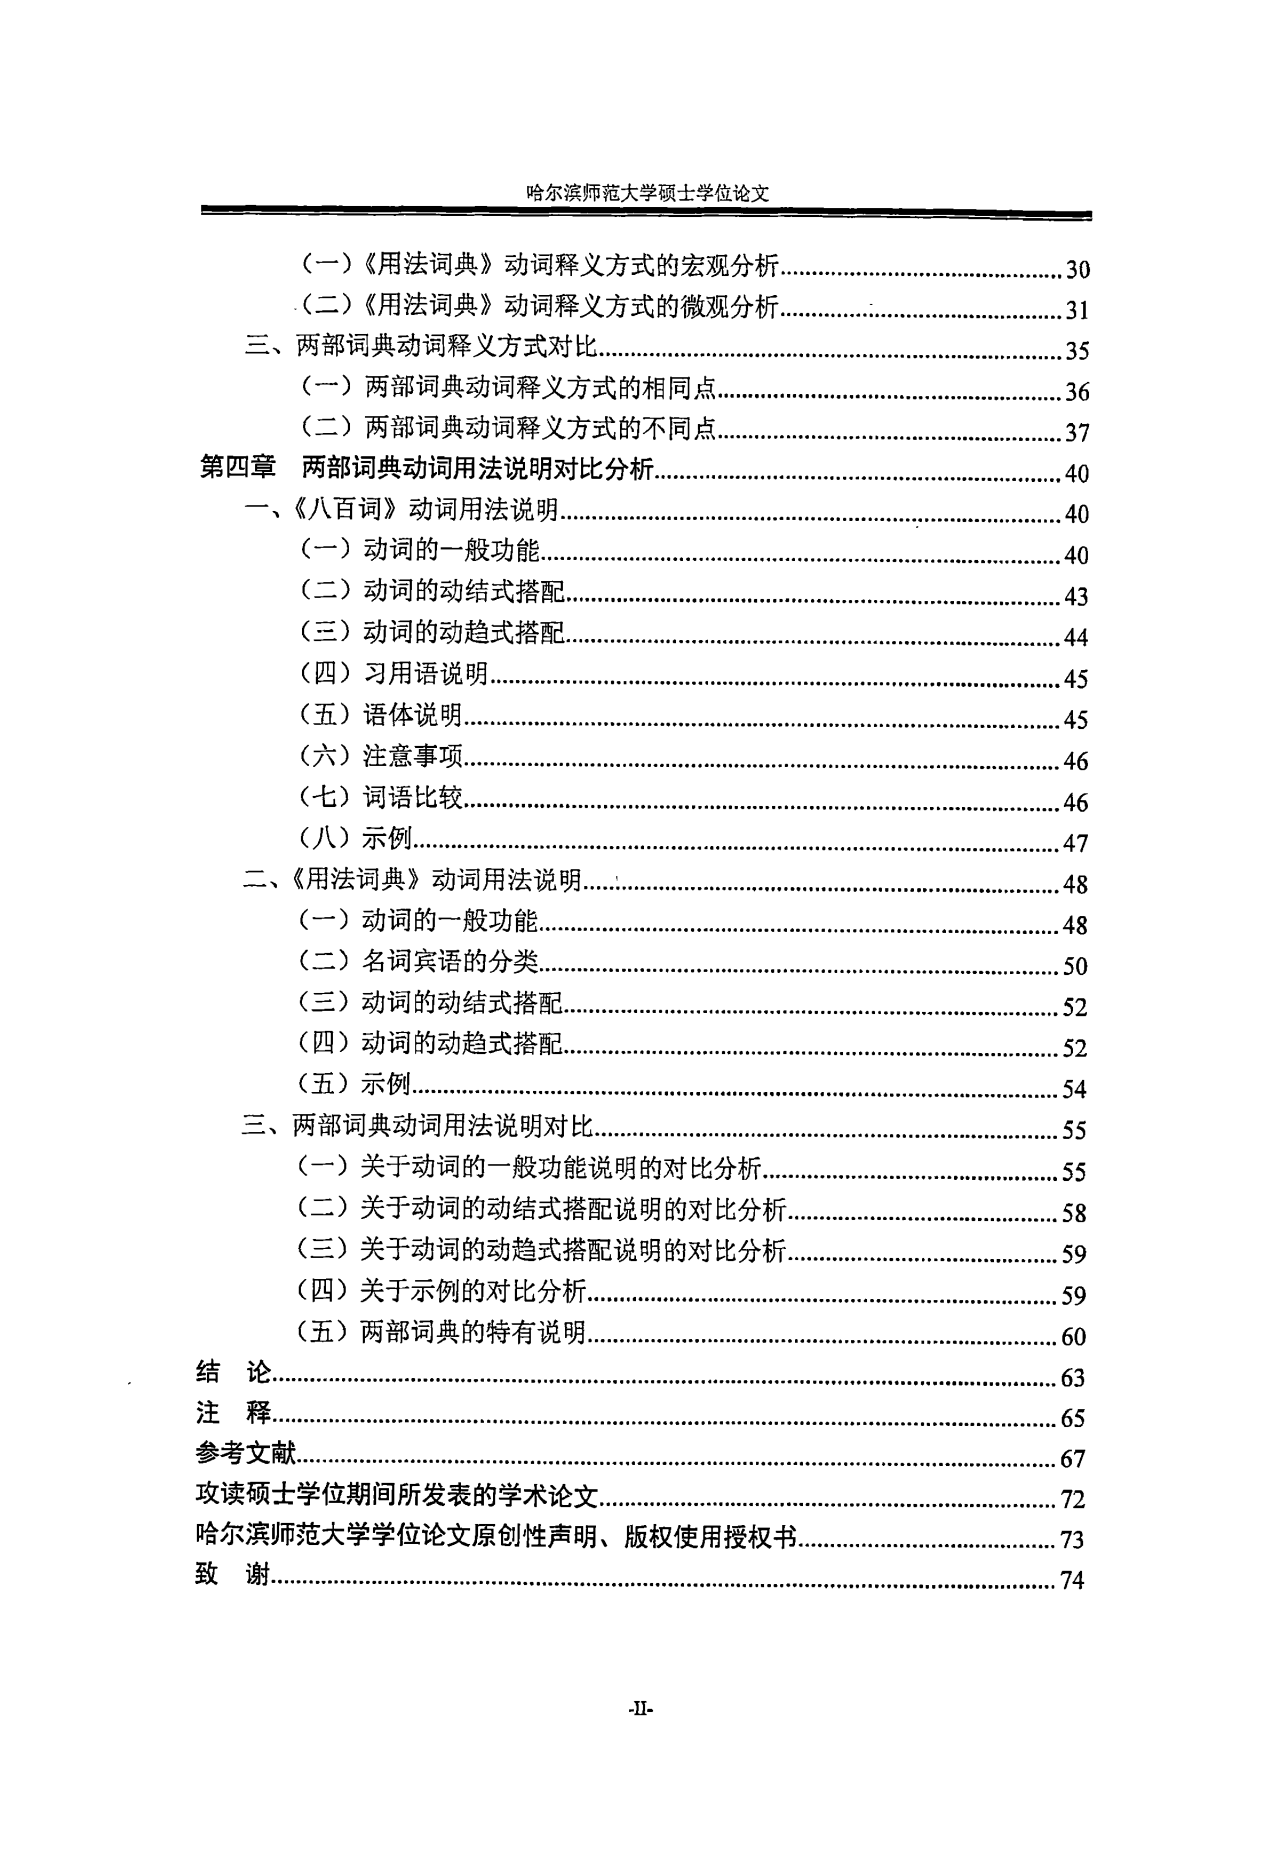 现代汉语用法词典动词释义、用法说明对比研究——以《现代汉语八